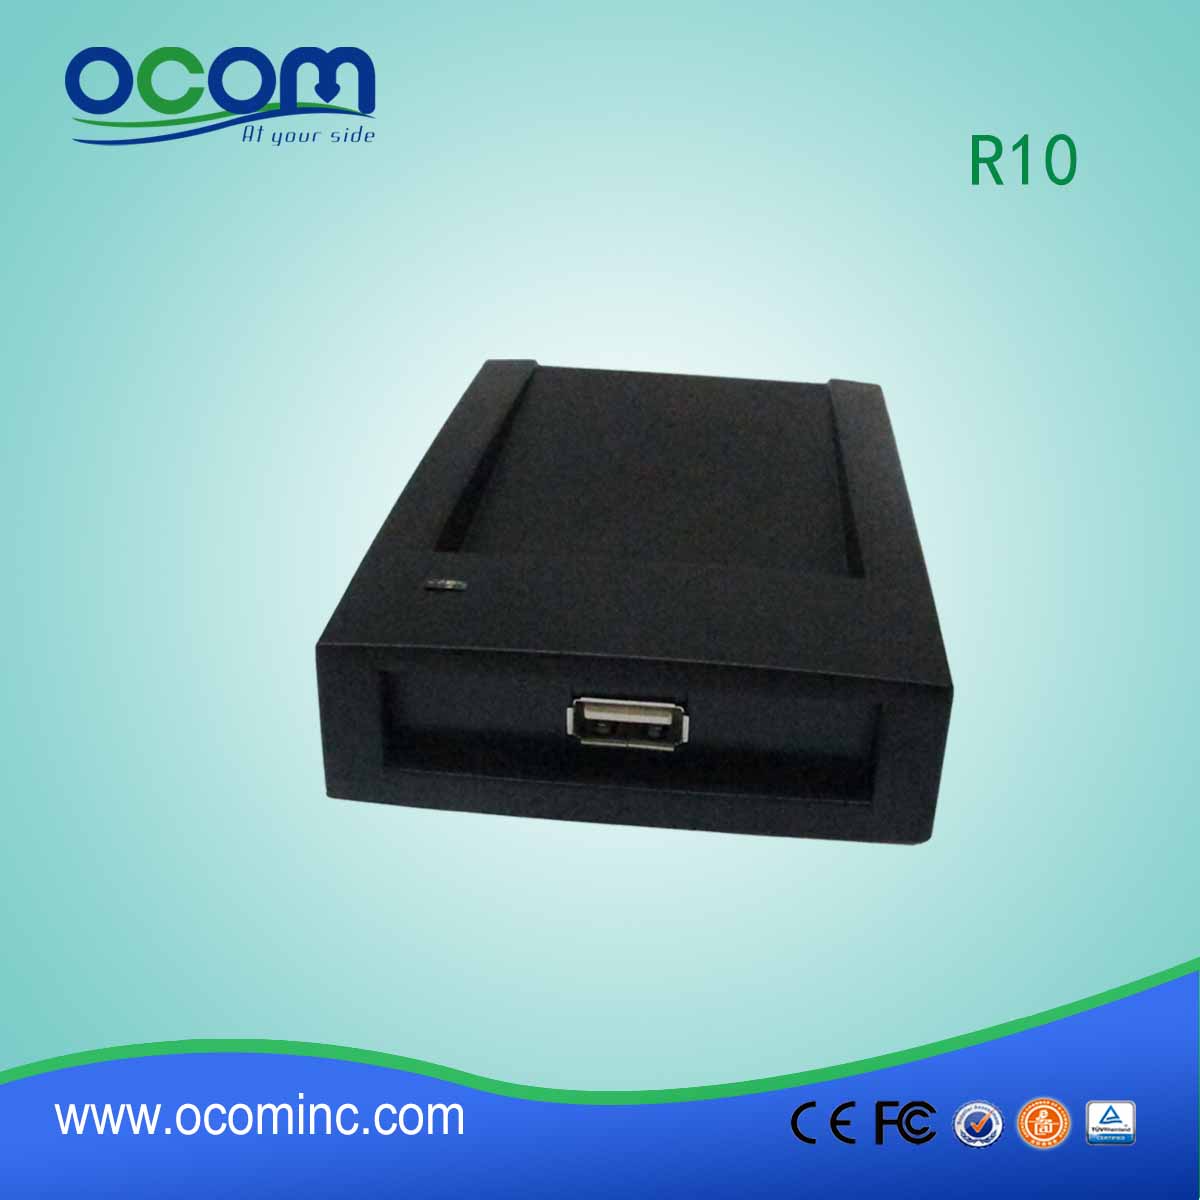 Αναγνώστης κάρτας RFID OCOM-R10 USB Plug and Play για 125KHZ / 13.56MHZ